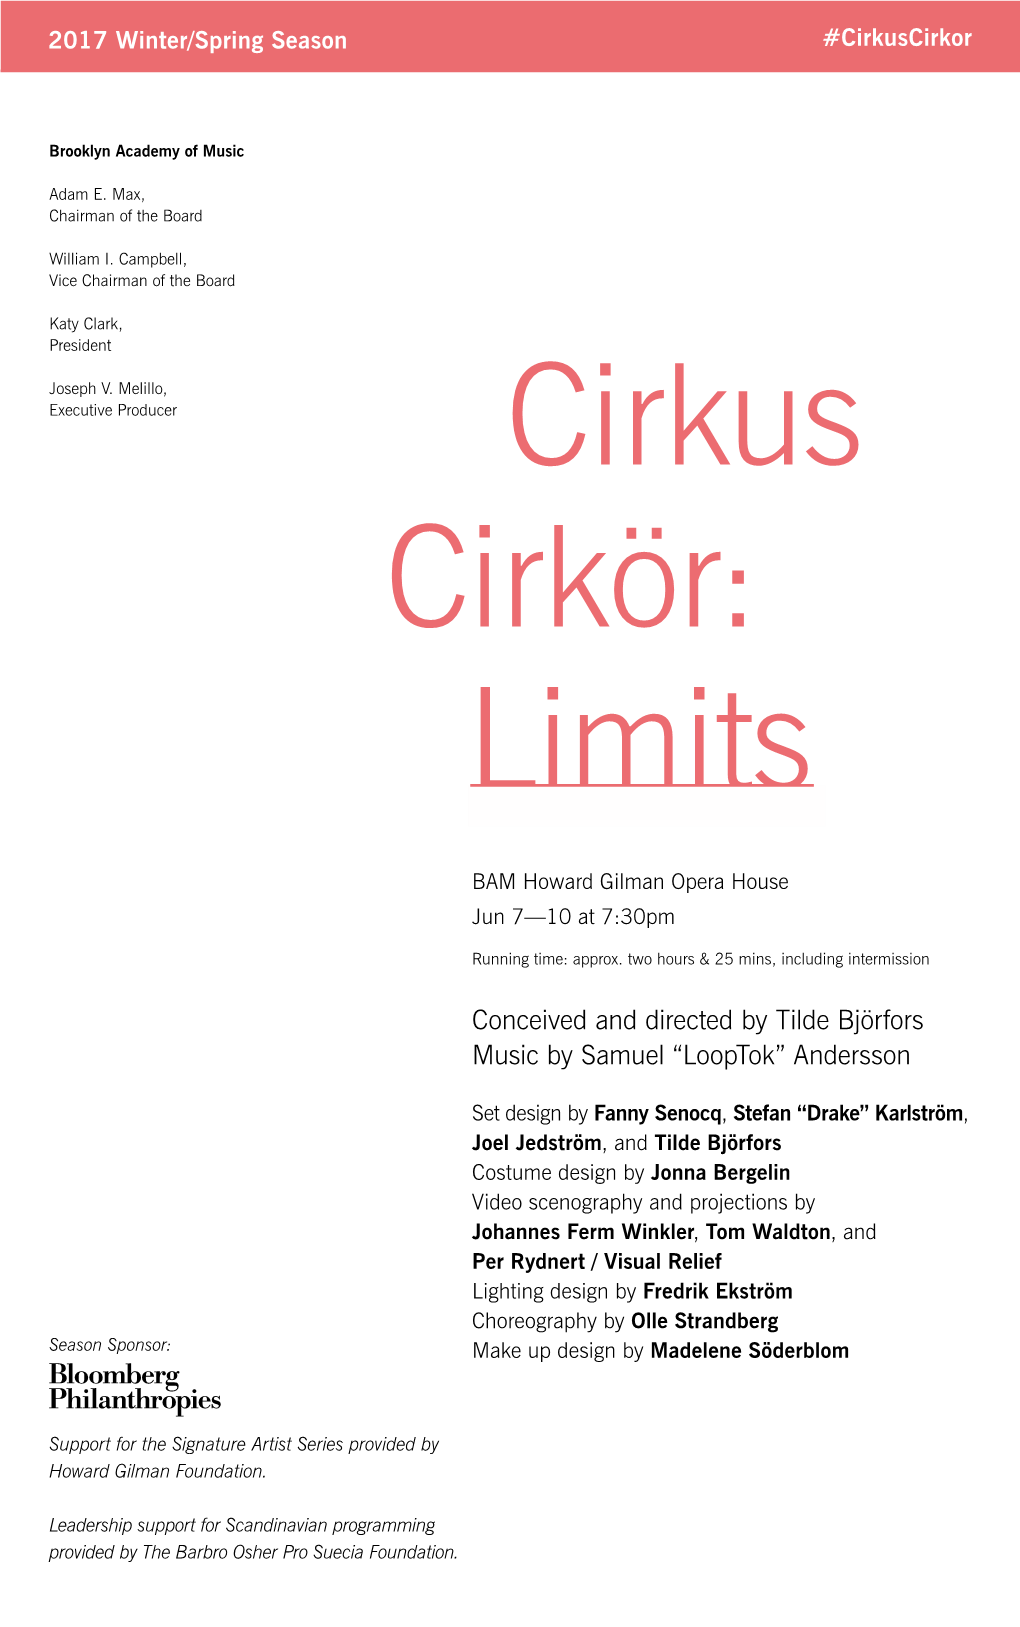 Cirkus Cirkör: Limits